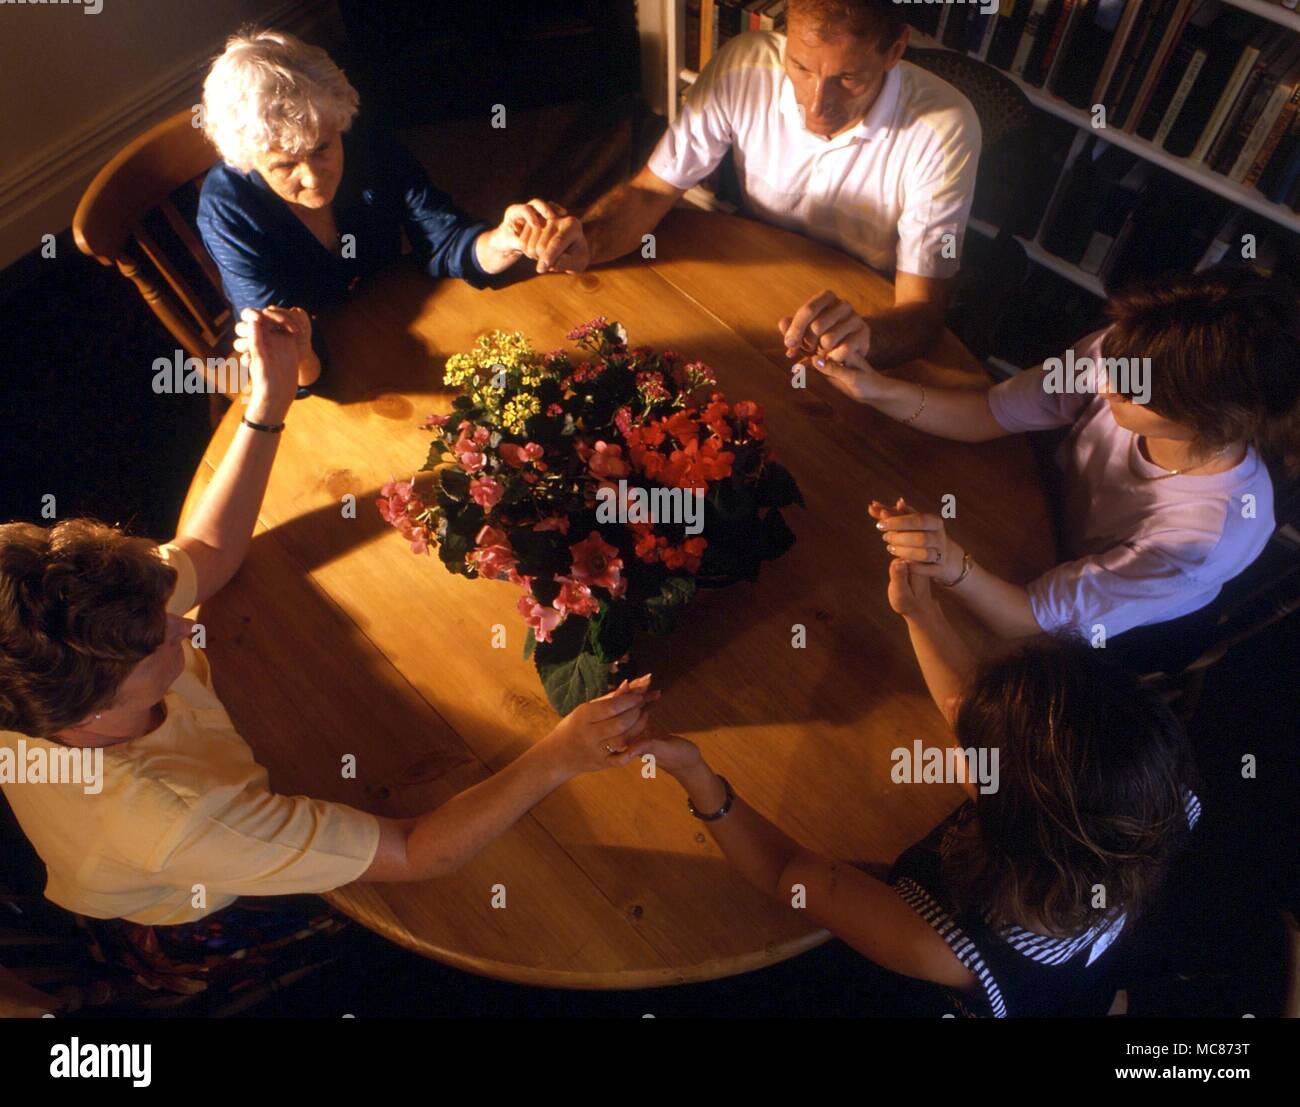 SEANCES. Eine Gruppe von Personen sitzen um einen Tisch mit den Händen berühren, mit dem Ziel, die Ladung der Atmosphäre in einer Weise förderlich für die geisterbeschwörung slarivoyantly. Die Blumen werden gesagt, Kontakt mit den Geistwesen zu erhöhen. Stockfoto